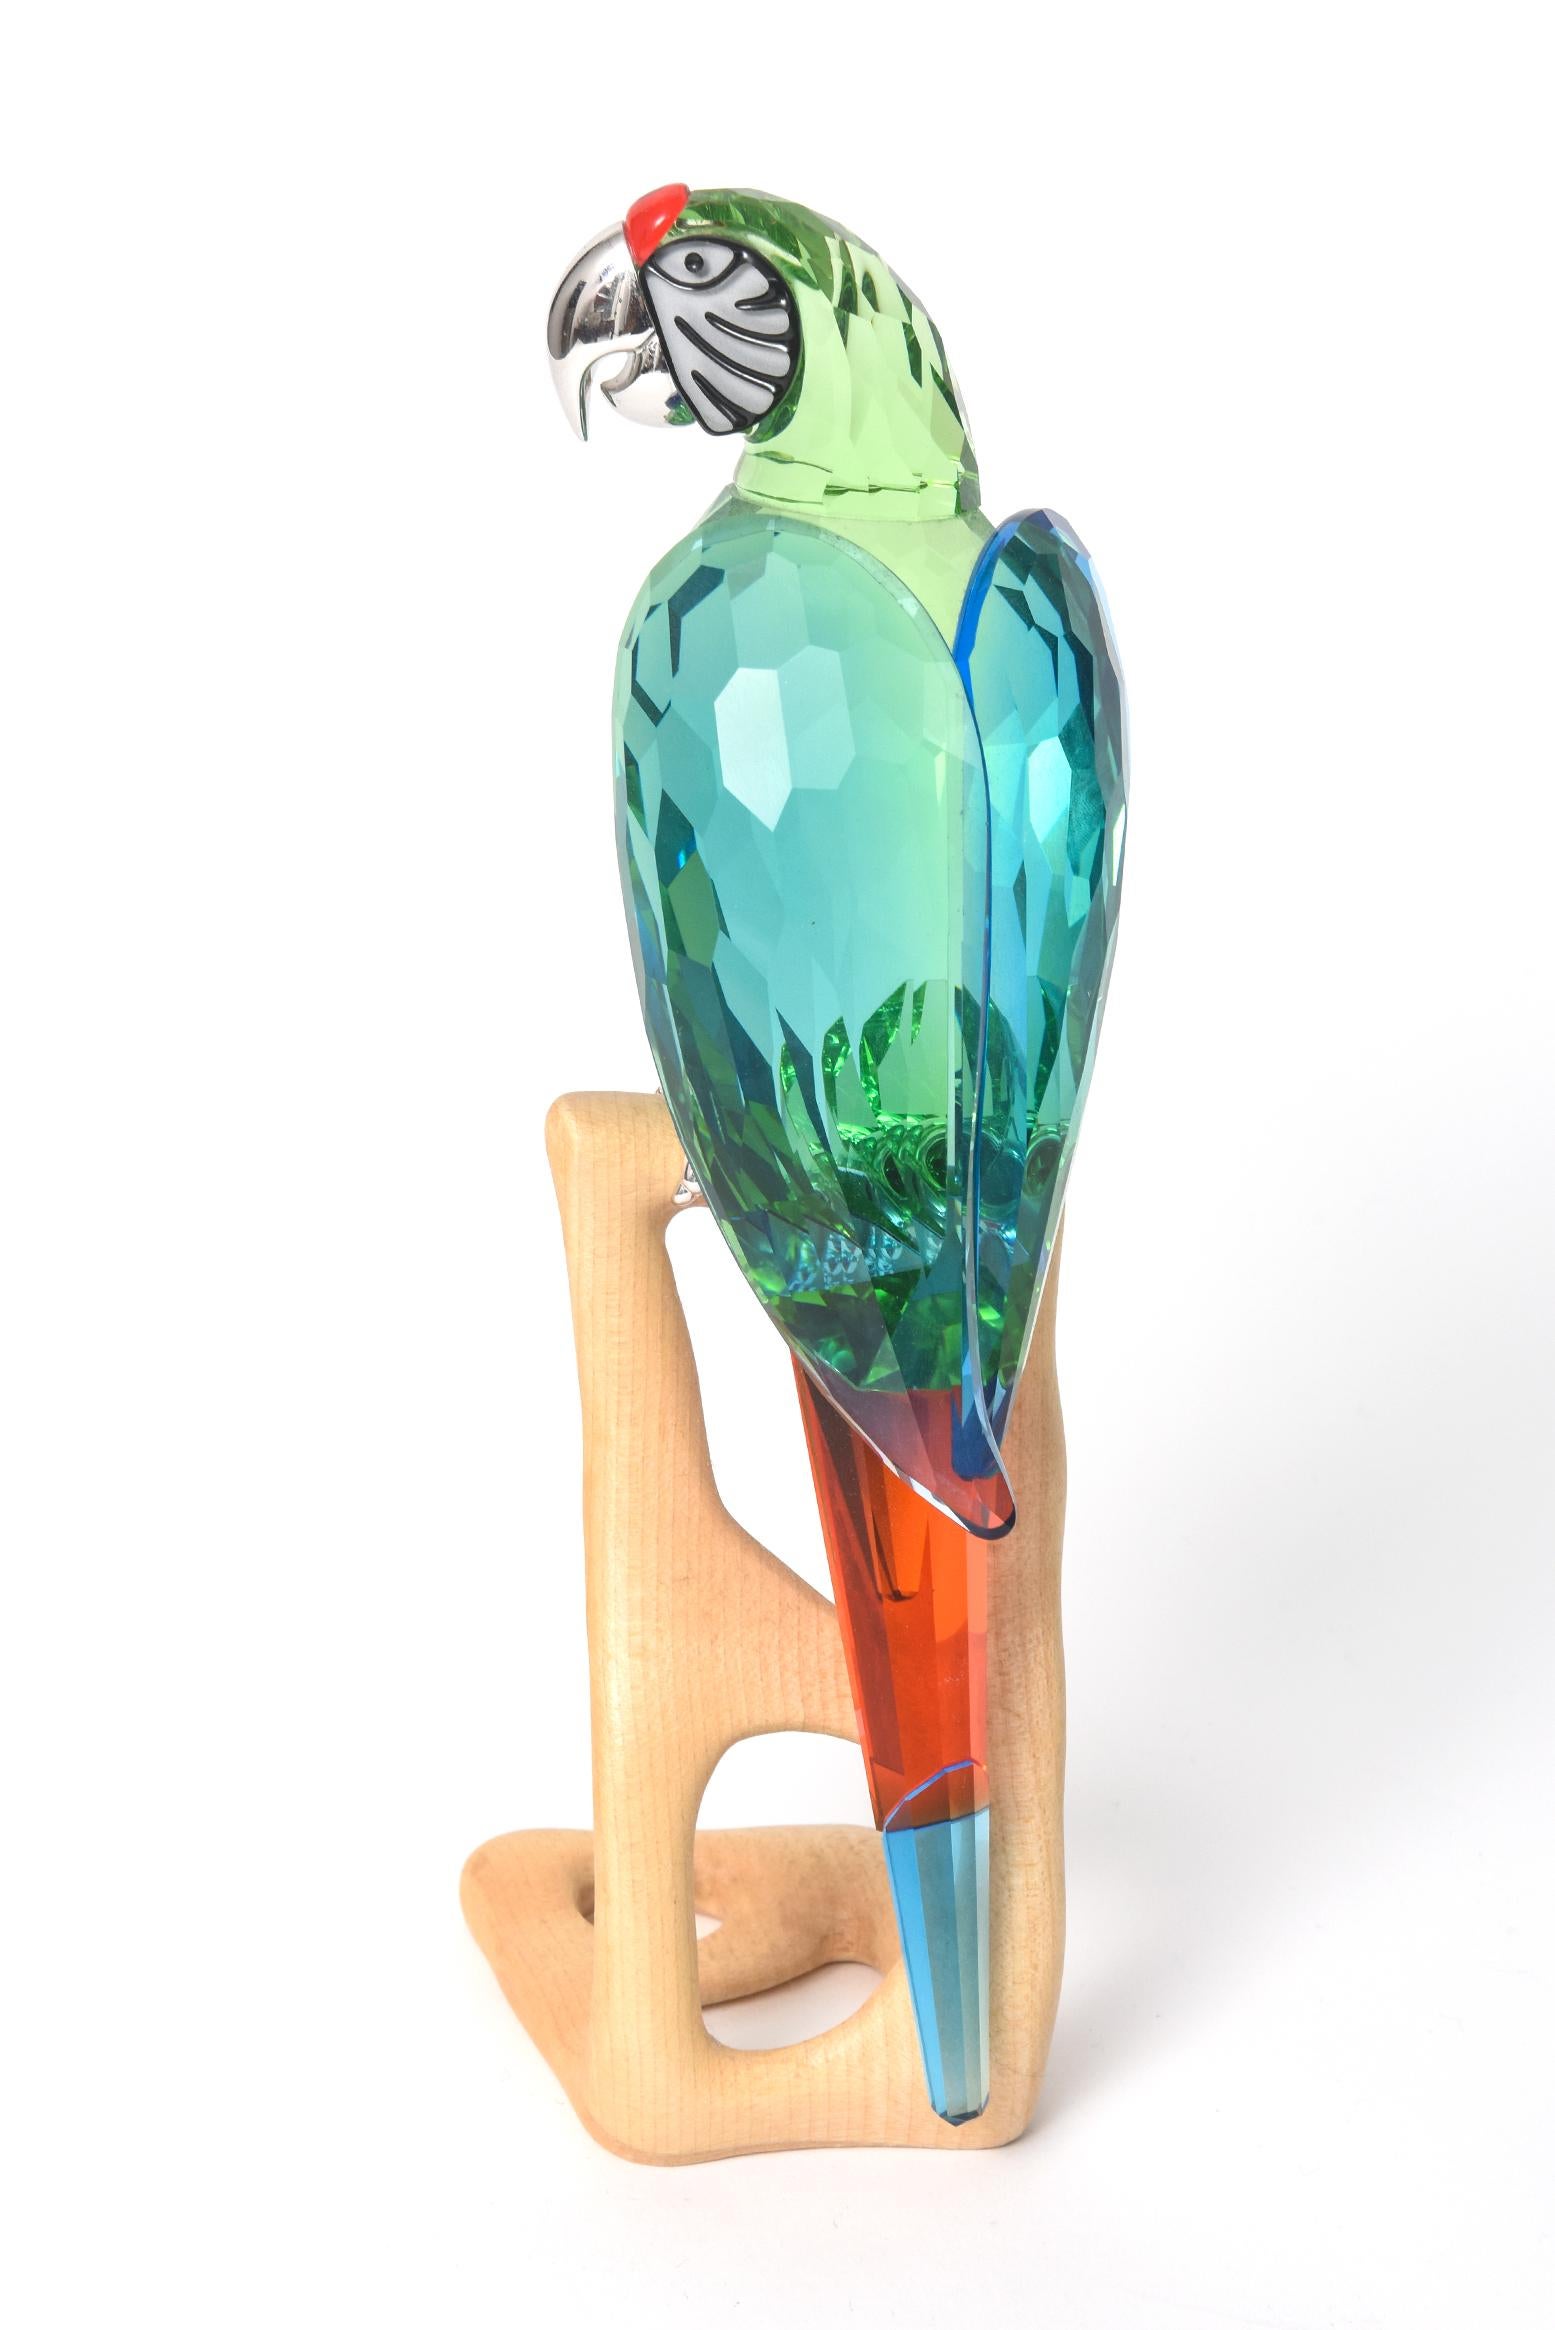 Un magnifique ara en cristal Swarovski de 9,25 pouces de haut, vert chrome, #685824 est livré avec sa boîte d'origine et ses papiers. Cet oiseau du Paradis est en cristal vert et son bec est en métal chromé. L'ara est posé sur un socle en bois.